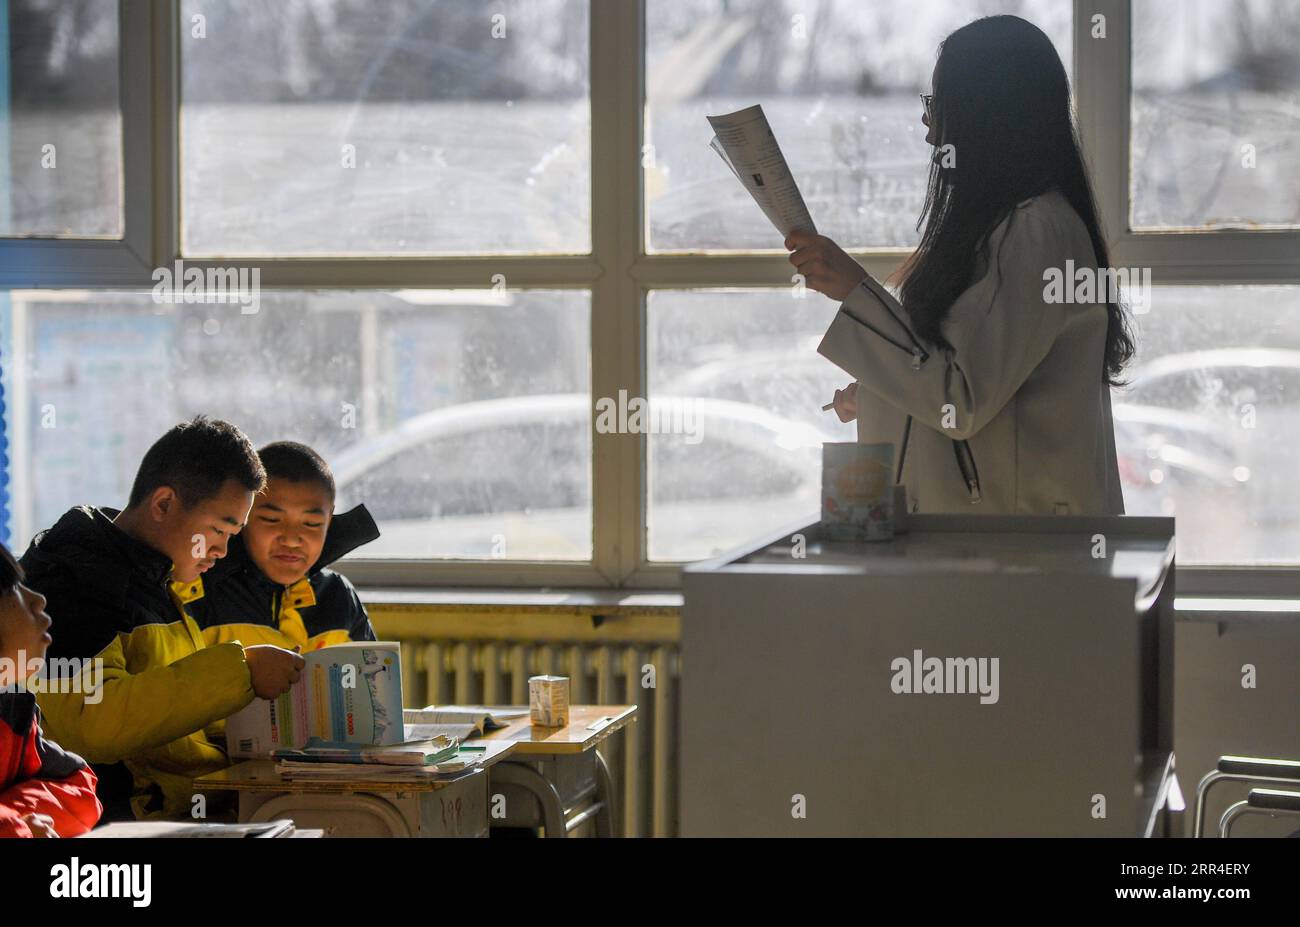 201202 -- CHIFENG, 2 décembre 2020 -- Sun Simiao 1st, L et Wang Aoran 2nd, L sont en classe à l'école de Chifeng City, dans la région autonome de Mongolie intérieure du nord de la Chine, le 25 novembre 2020. Wang Aoran, 15 ans, a été handicapé en action par une anomalie de créatine kinase depuis qu'il était enfant. Alors qu'il était en deuxième année de l'école primaire, il a reçu l'aide de son camarade de classe Sun Simiao, qui a volontairement commencé à le transporter de la porte de l'école à sa classe. Il l'aide depuis. Les deux sont devenus inséparables meilleurs amis. Ils sont allés au même collège, tous les deux dans la même classe, et ils sont même devenus Banque D'Images